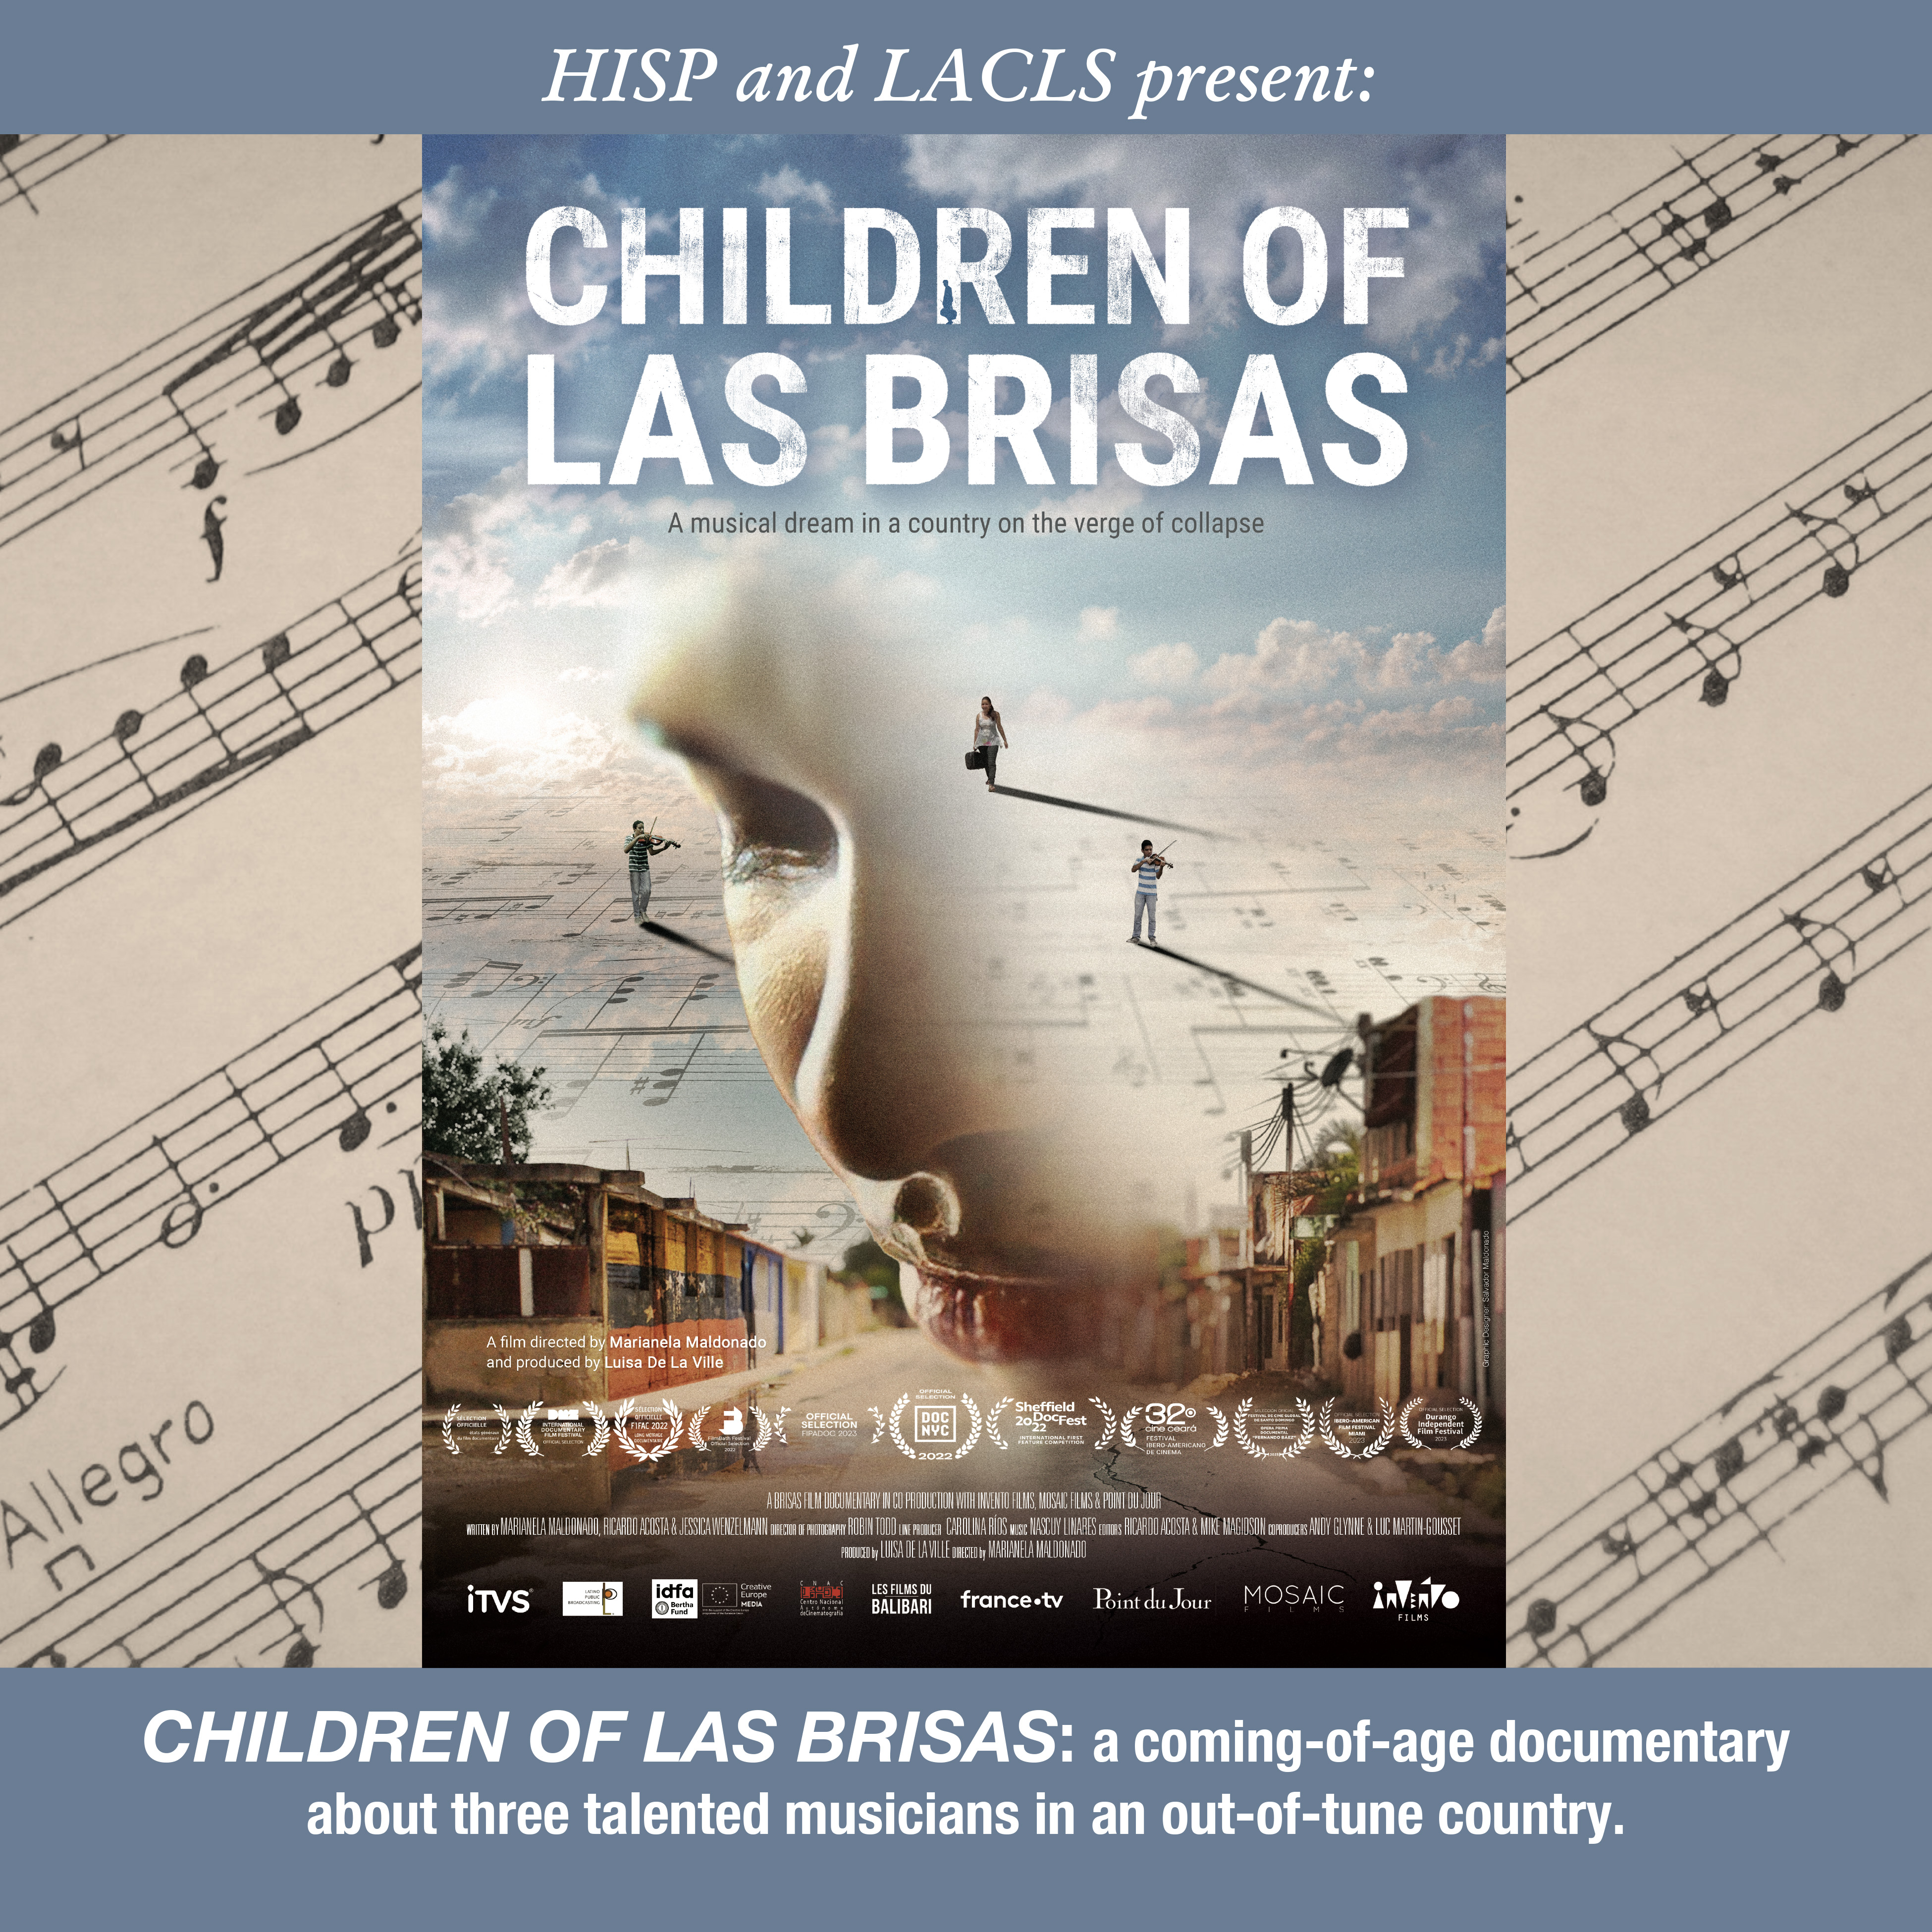 Poster for the film "Children of las brisas" Music Education in Venezuela